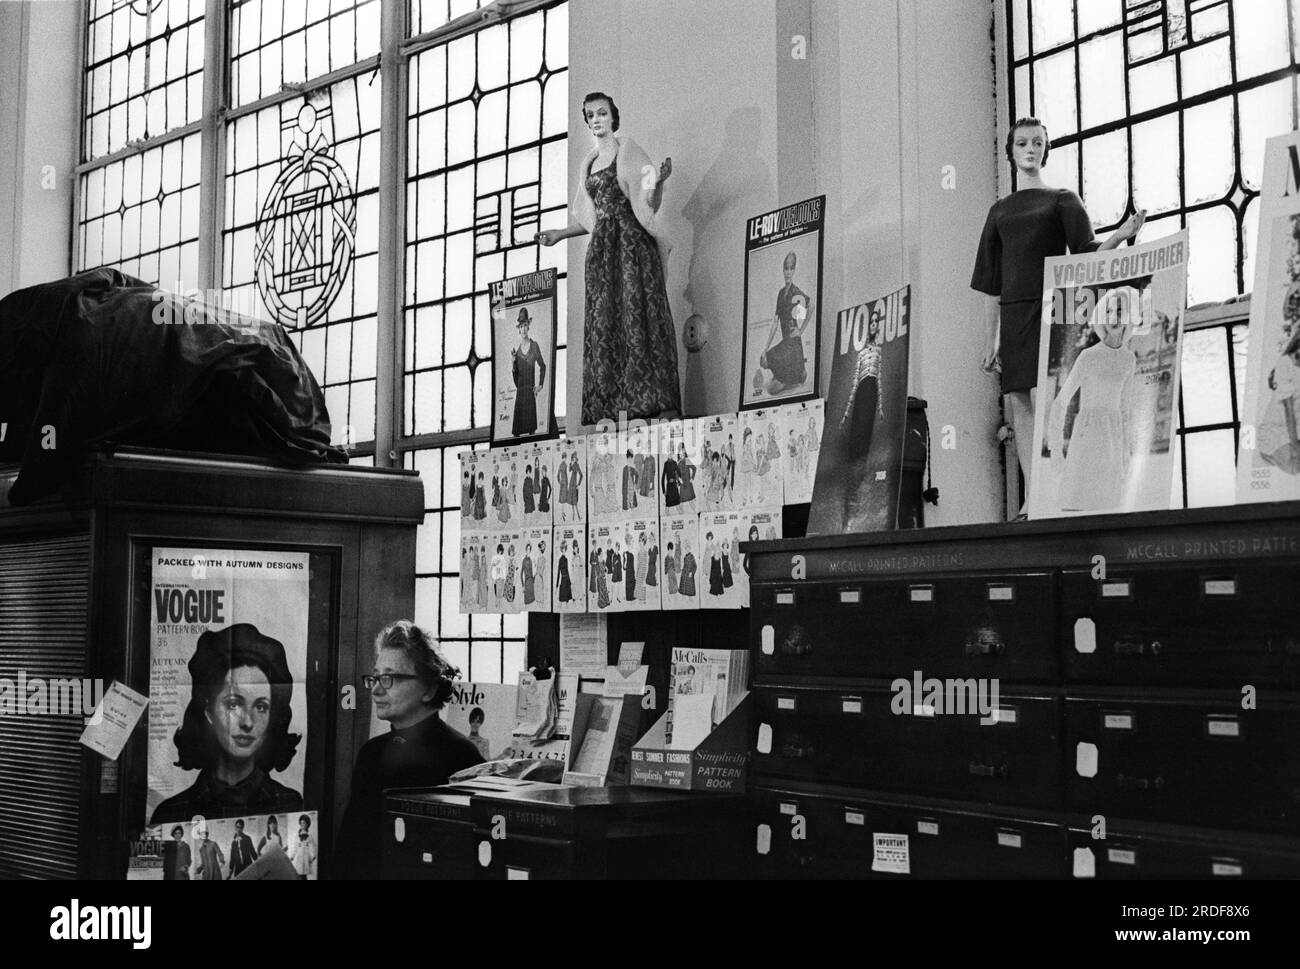 Derry et Toms le grand magasin de Kensington High Street. Département de patrons de confection de vêtements. Une femme assistante de magasin debout derrière un comptoir. Londres, Angleterre vers 1968. ANNÉES 1960 ROYAUME-UNI HOMER SYKES Banque D'Images